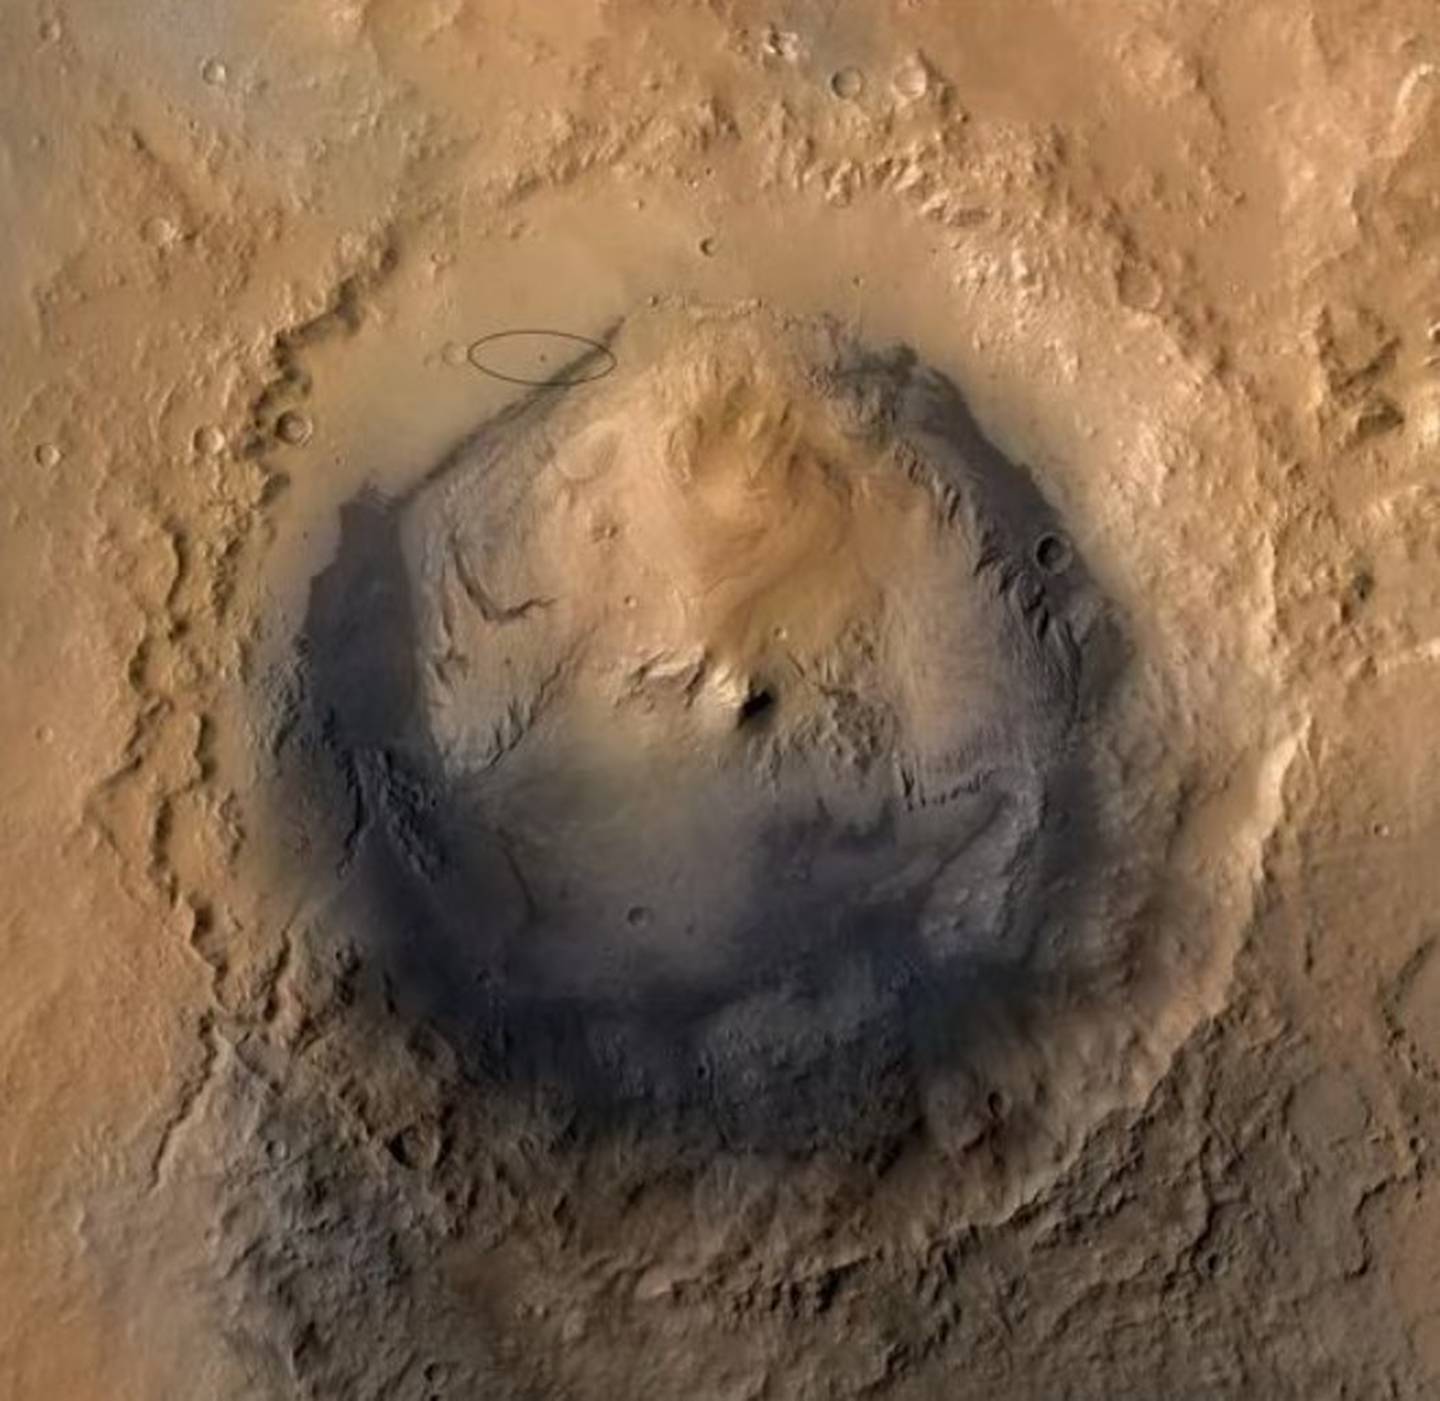 Cráter Gale